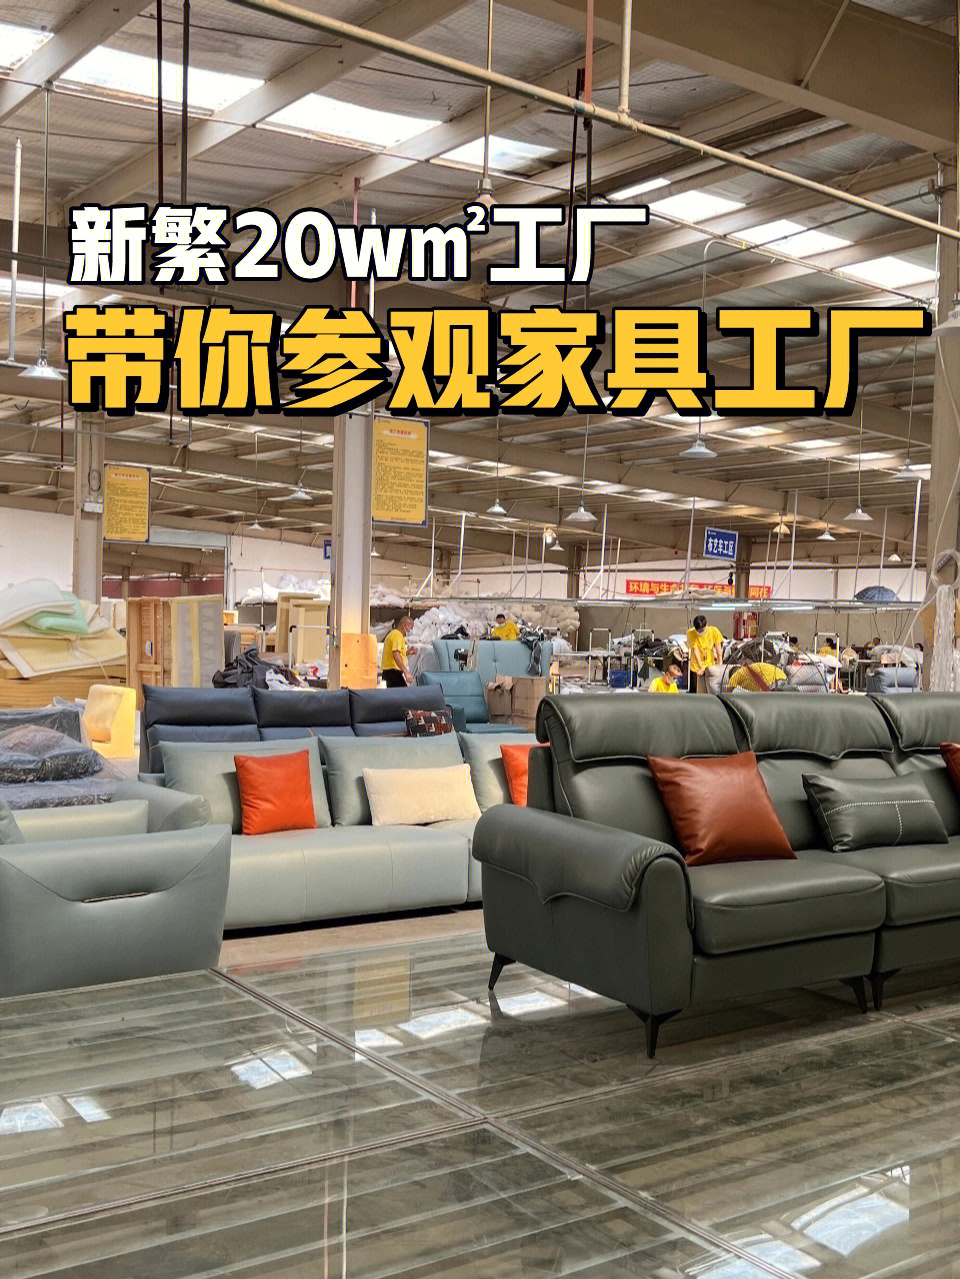 87众做周知【新繁】是成都一个超大家具城超多家具工厂,香江cbd等